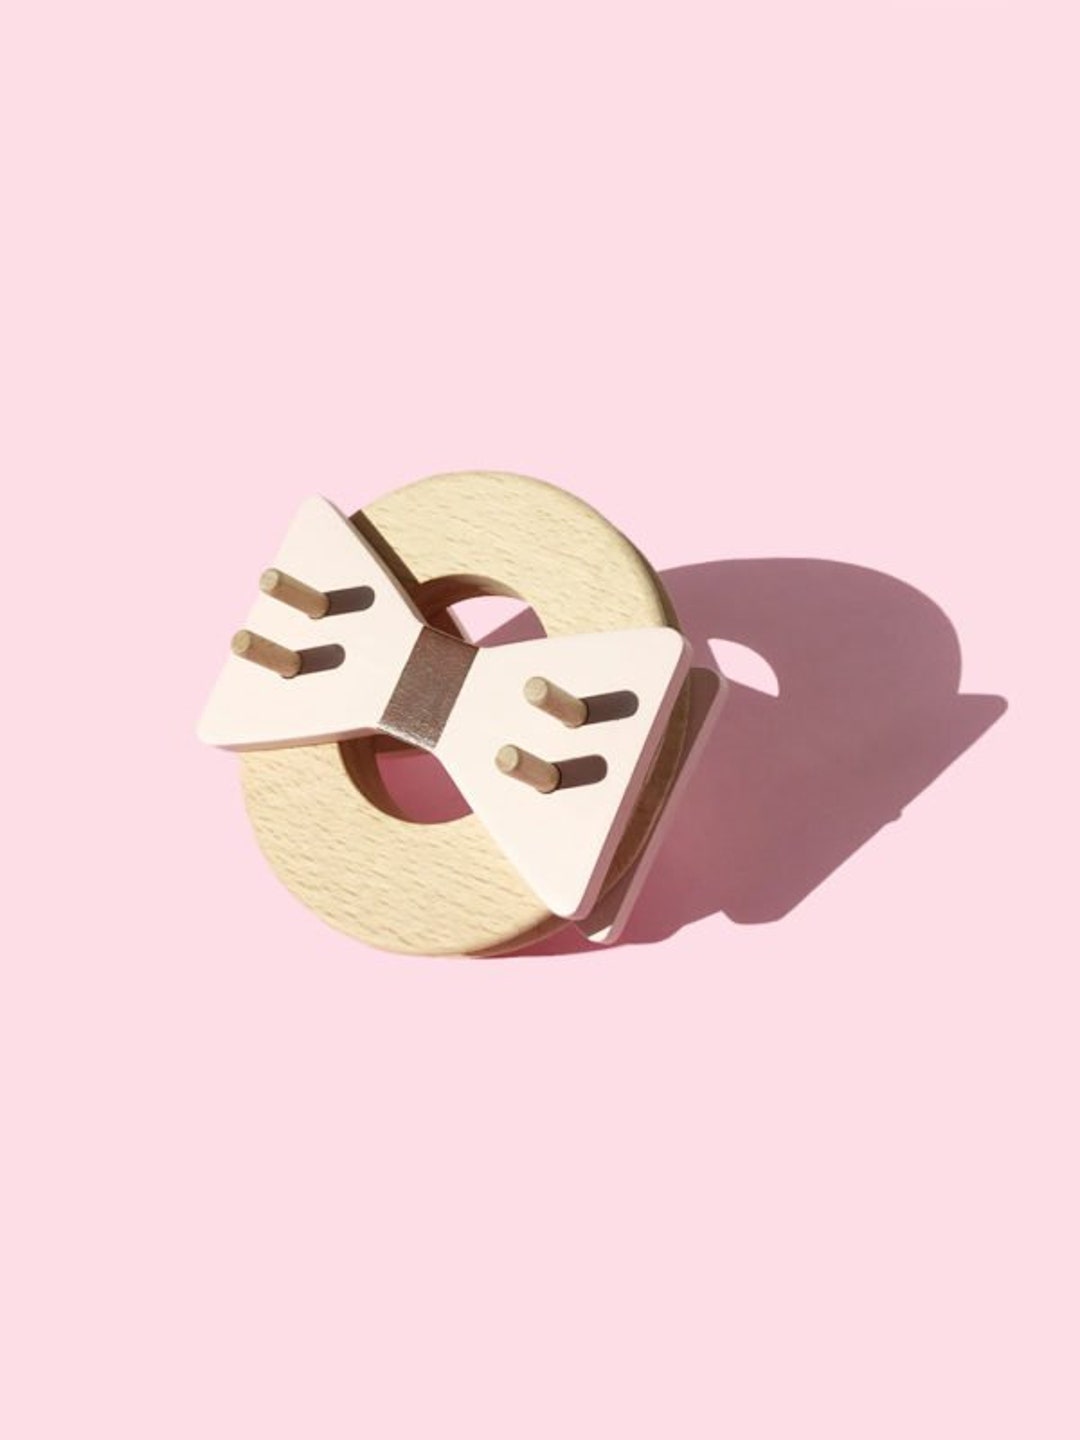 Donut Pom Maker – Vanilla